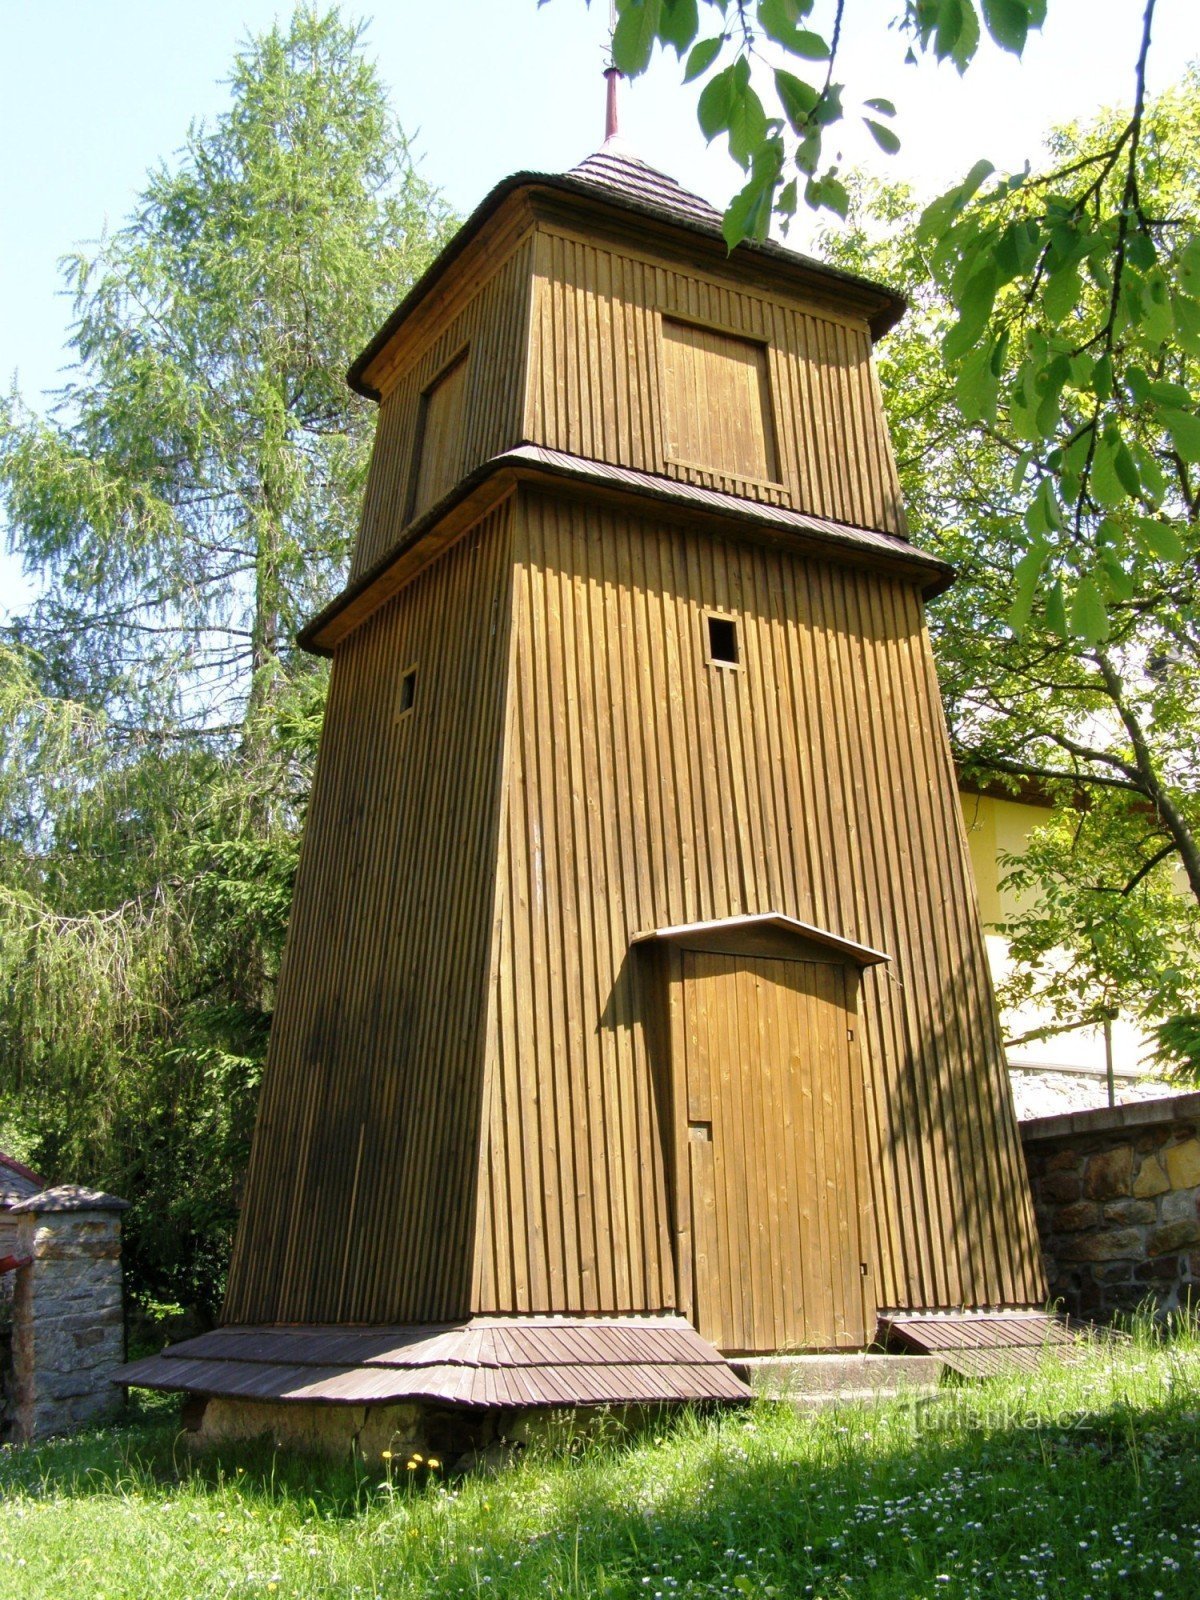 Bělá - crkva sa zvonikom